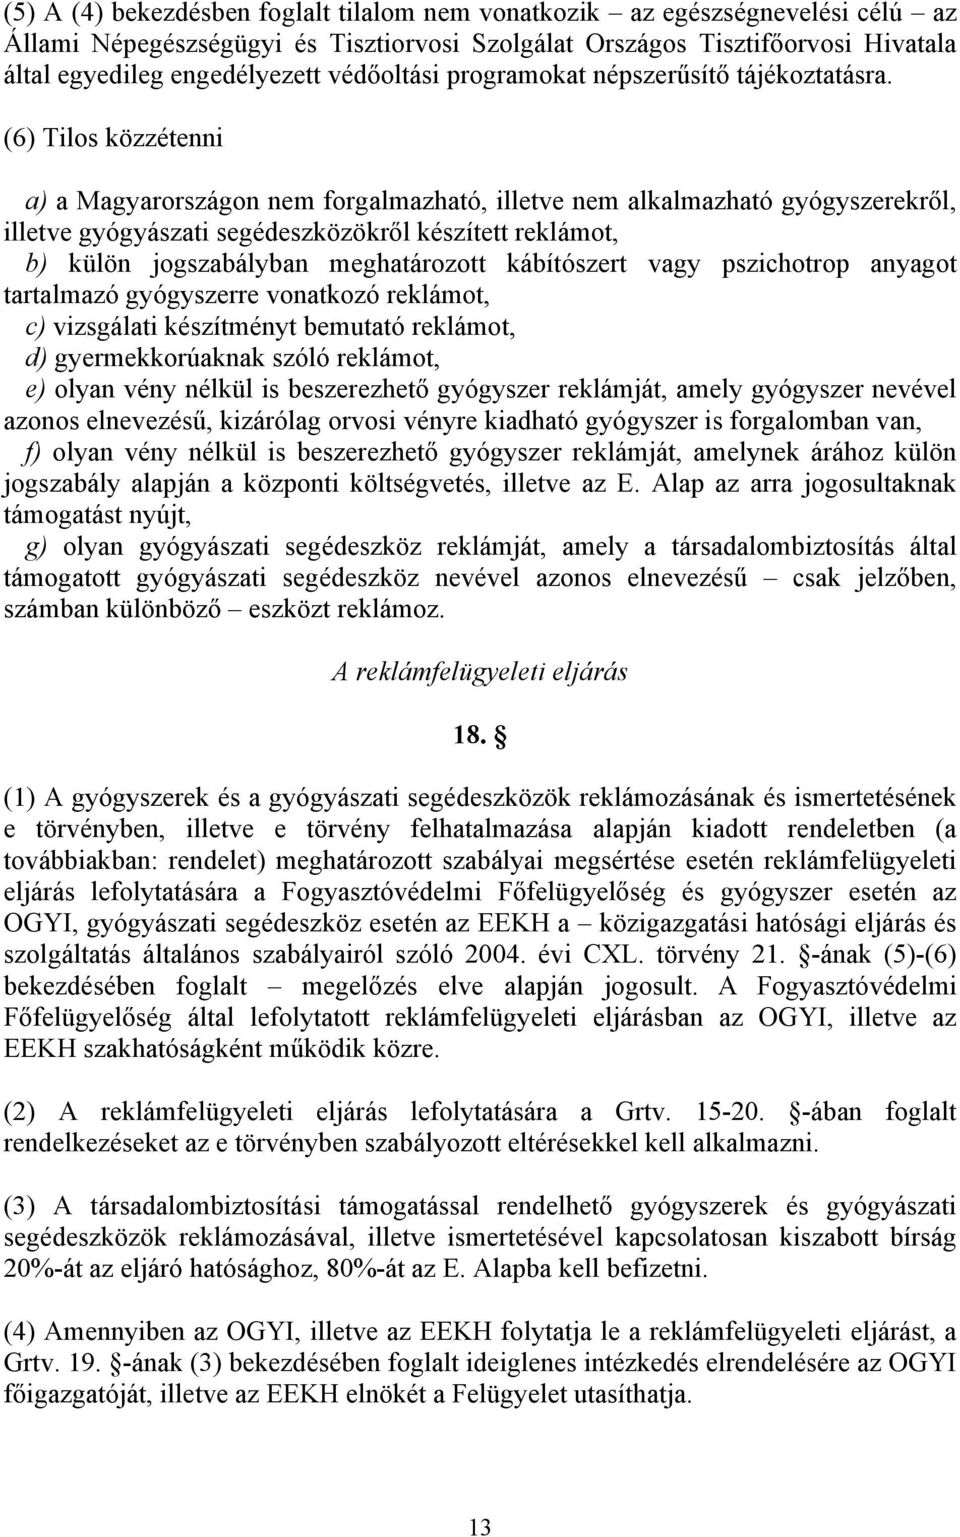 (6) Tilos közzétenni a) a Magyarországon nem forgalmazható, illetve nem alkalmazható gyógyszerekről, illetve gyógyászati segédeszközökről készített reklámot, b) külön jogszabályban meghatározott